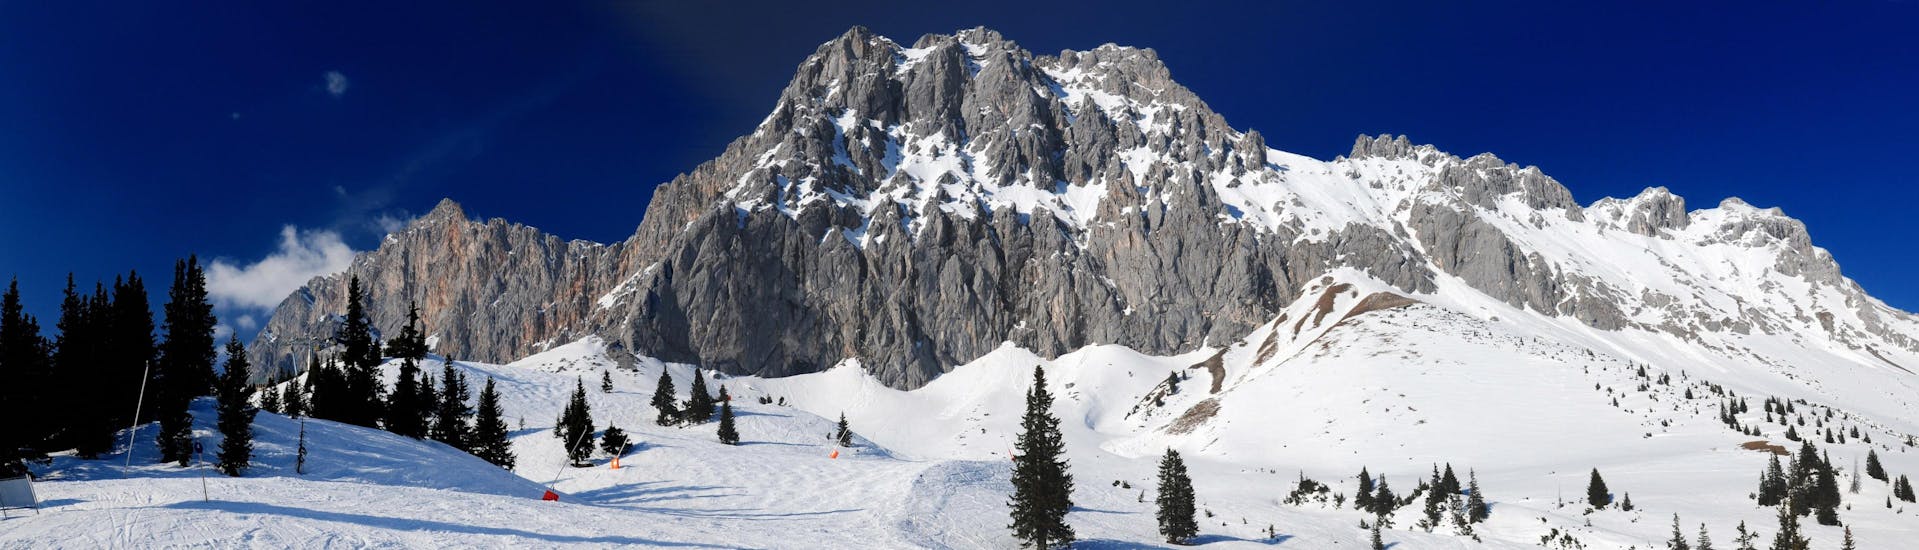 Blick auf das Bergpanorama im Skigebiet der Ehrwalder Alm, wo die örtlichen Skischulen ihre Skikurse anbieten.